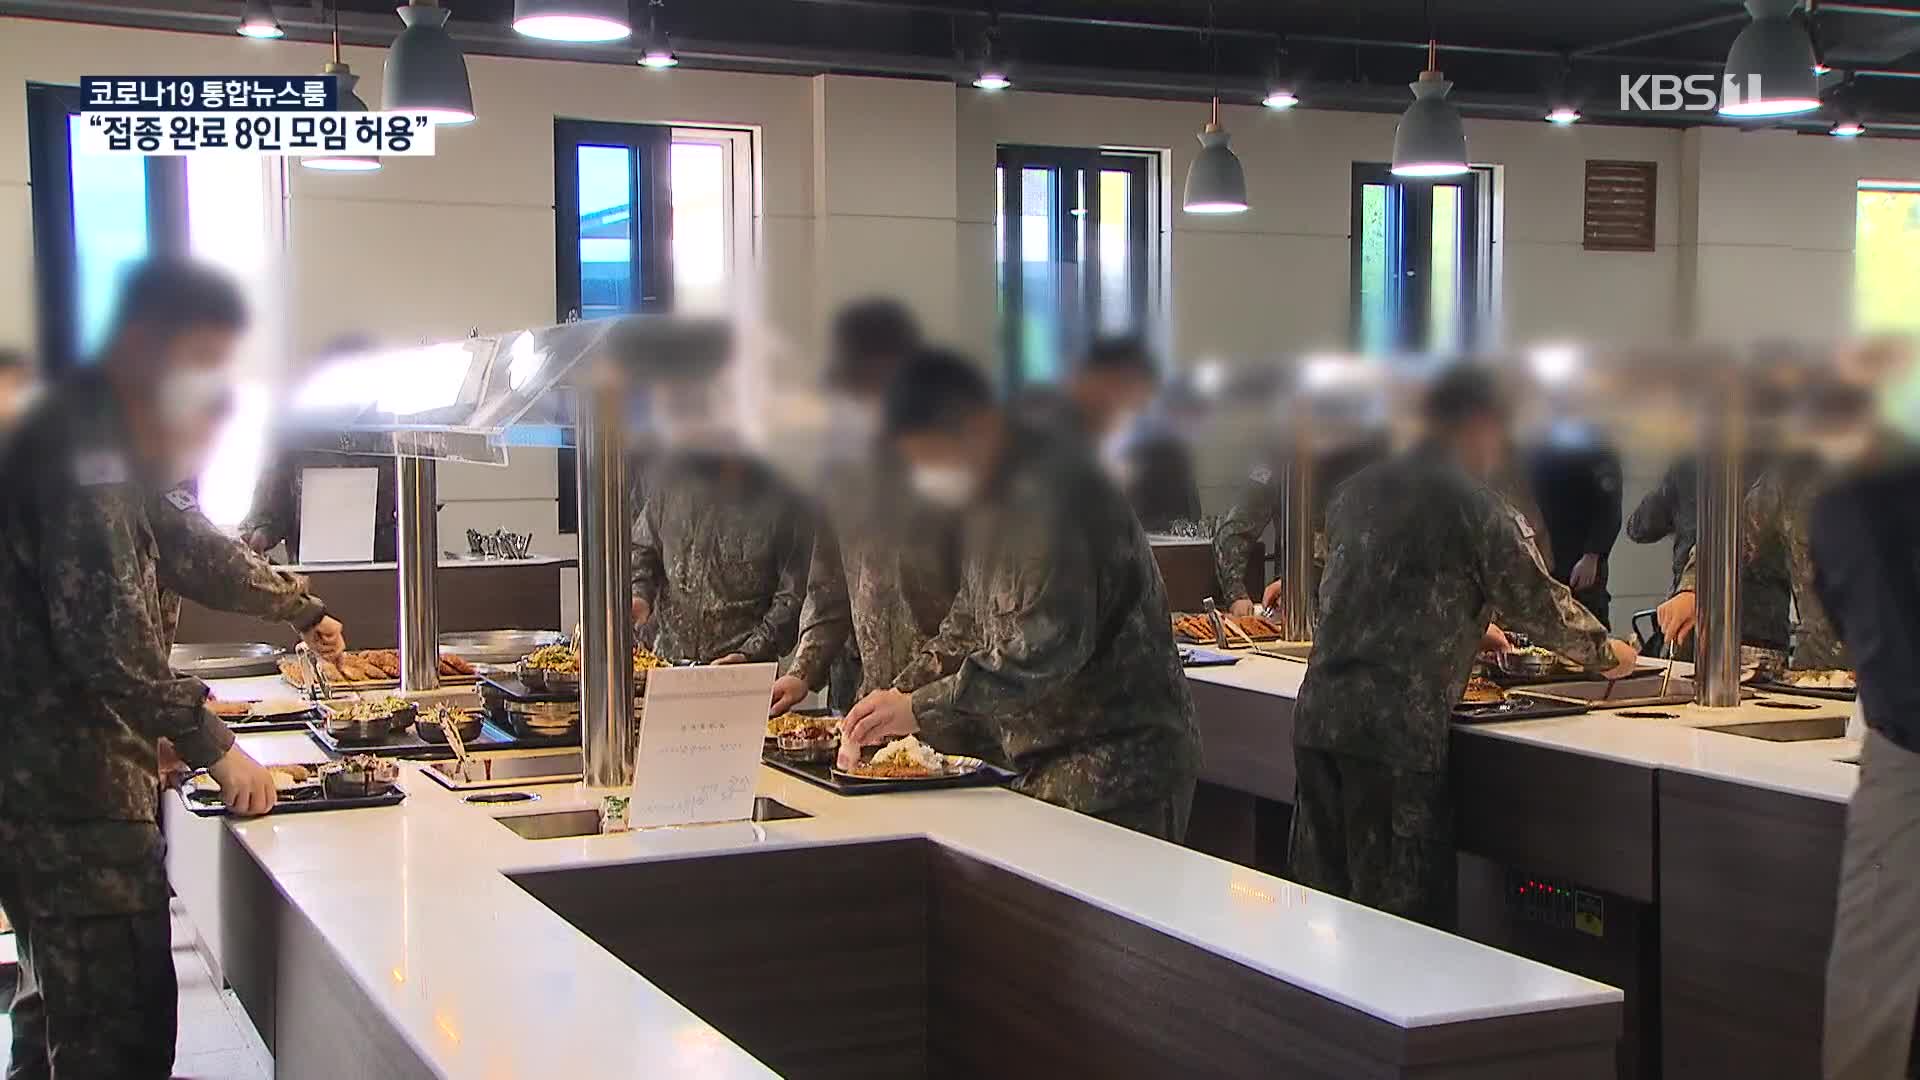 軍 급식, 25년부터 전량 경쟁 조달…식단 편성에 장병 참여